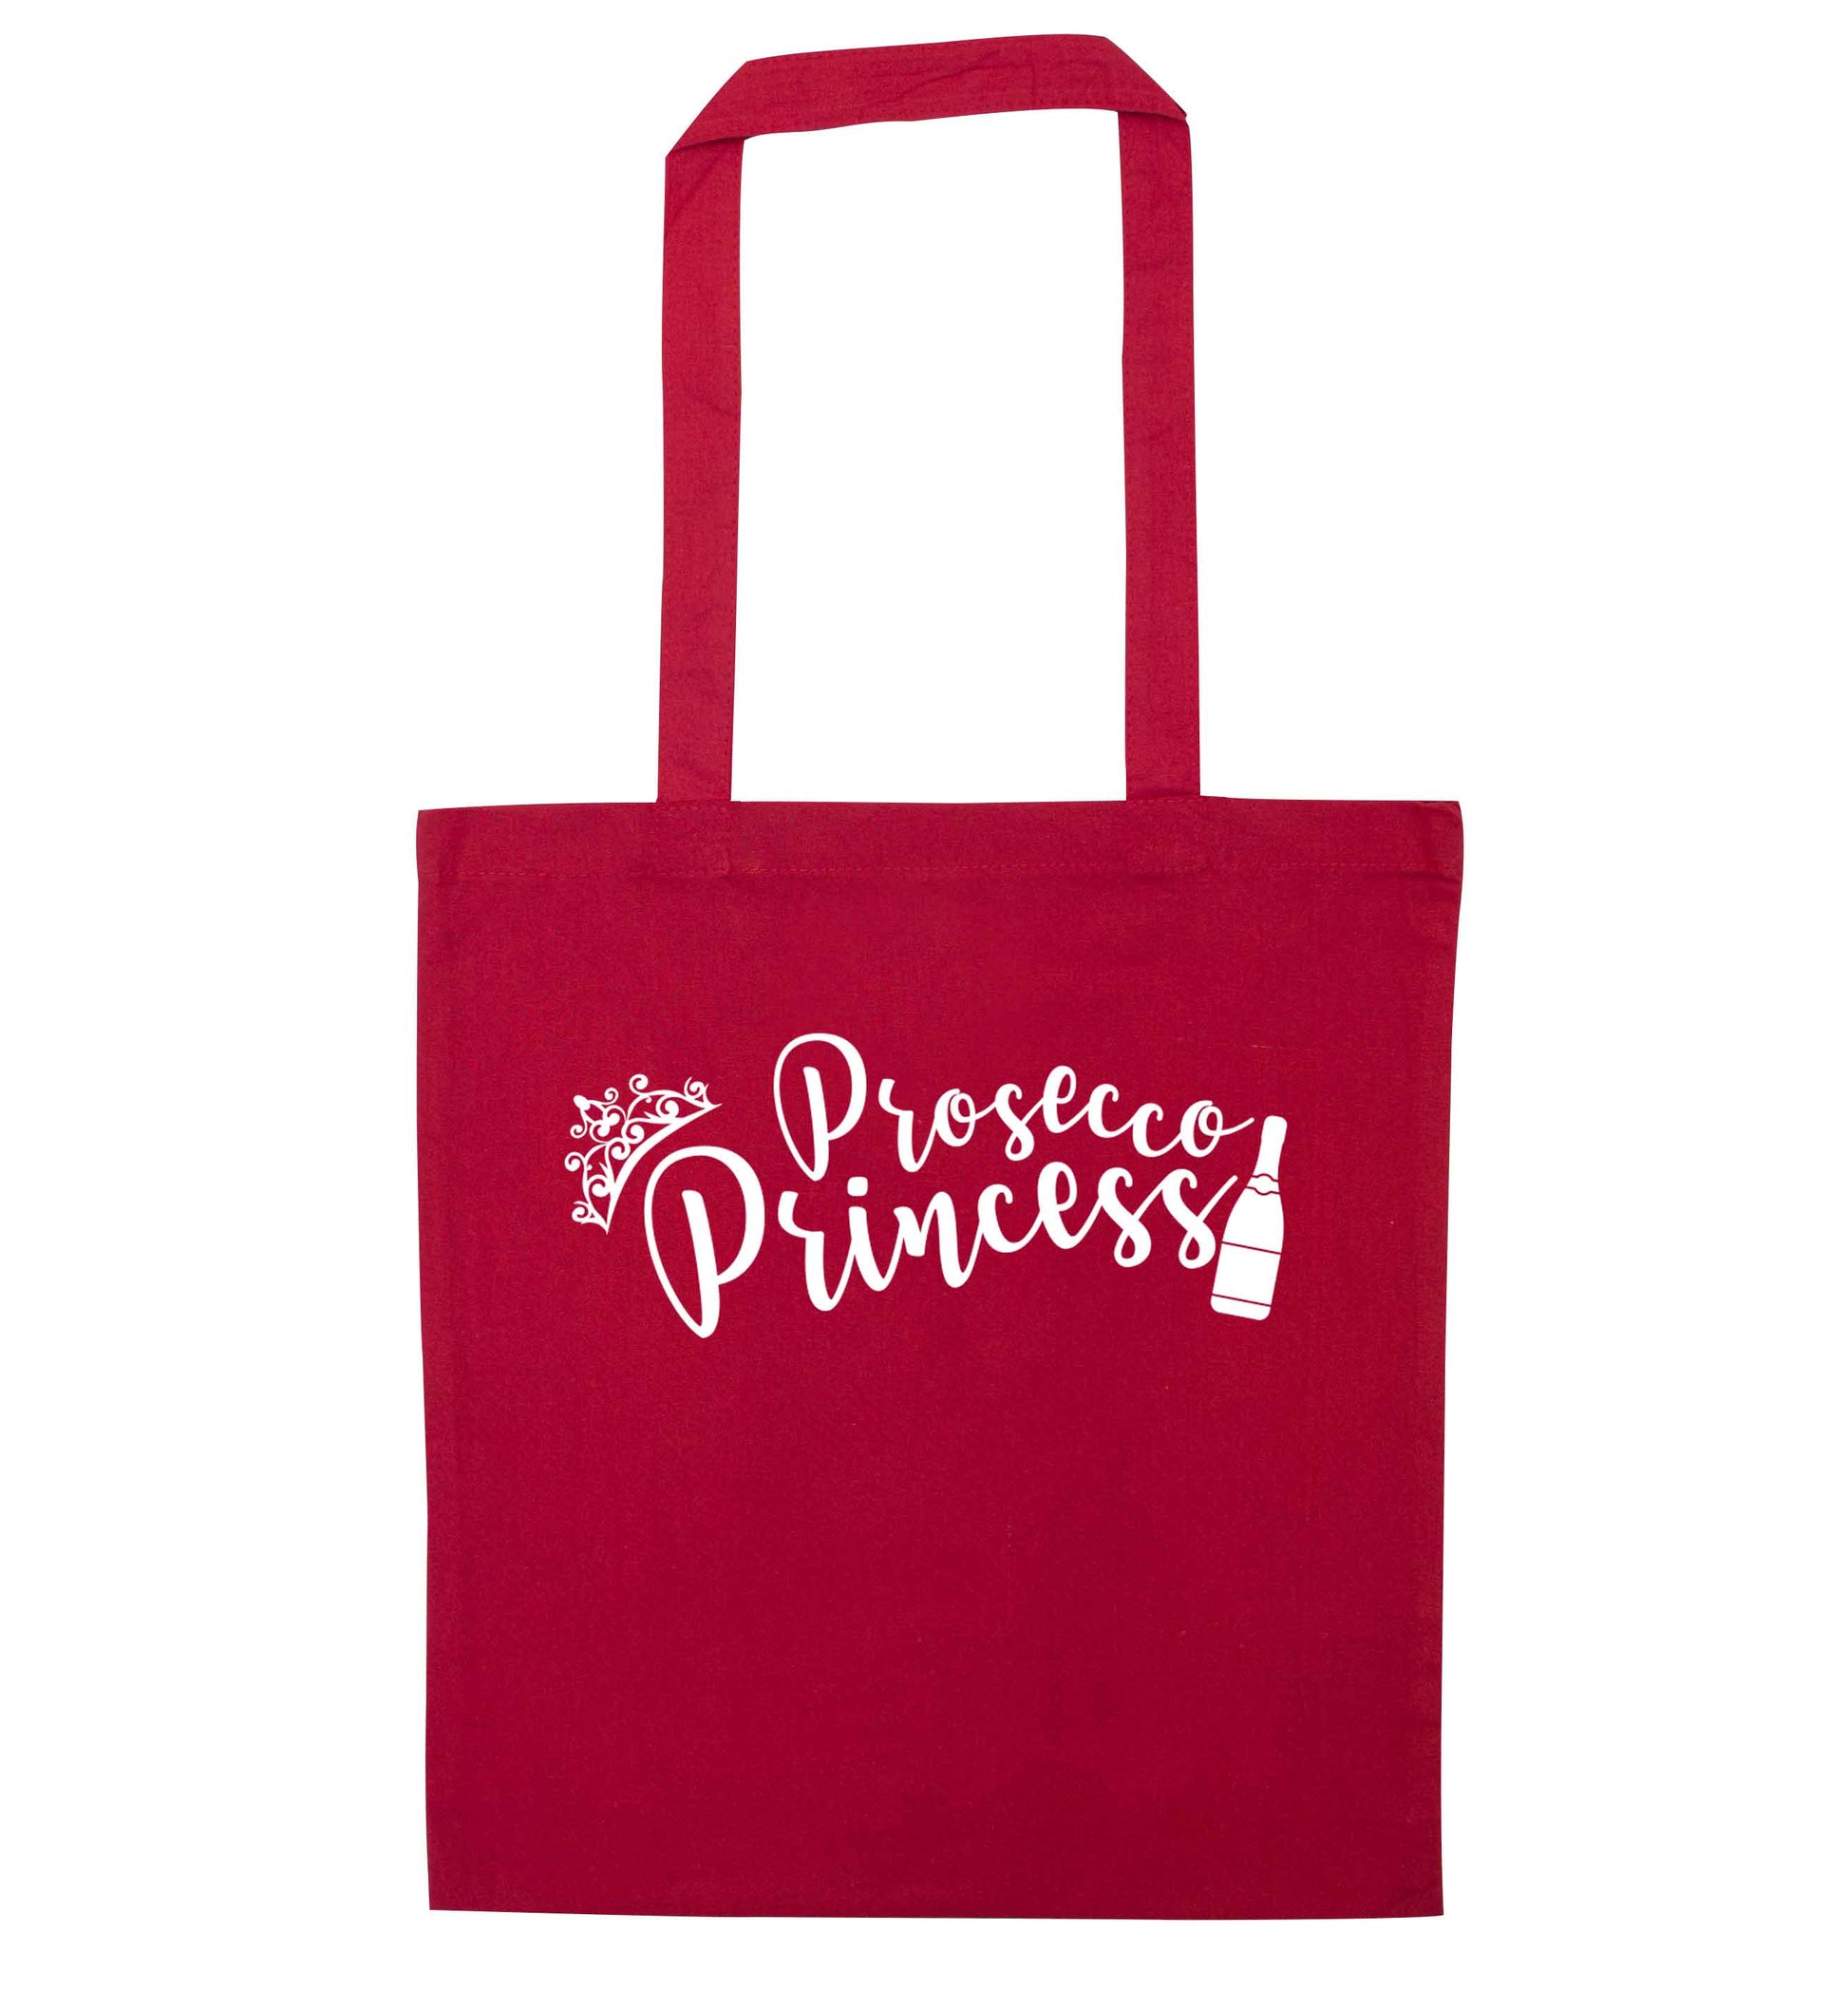 Prosecco princess red tote bag